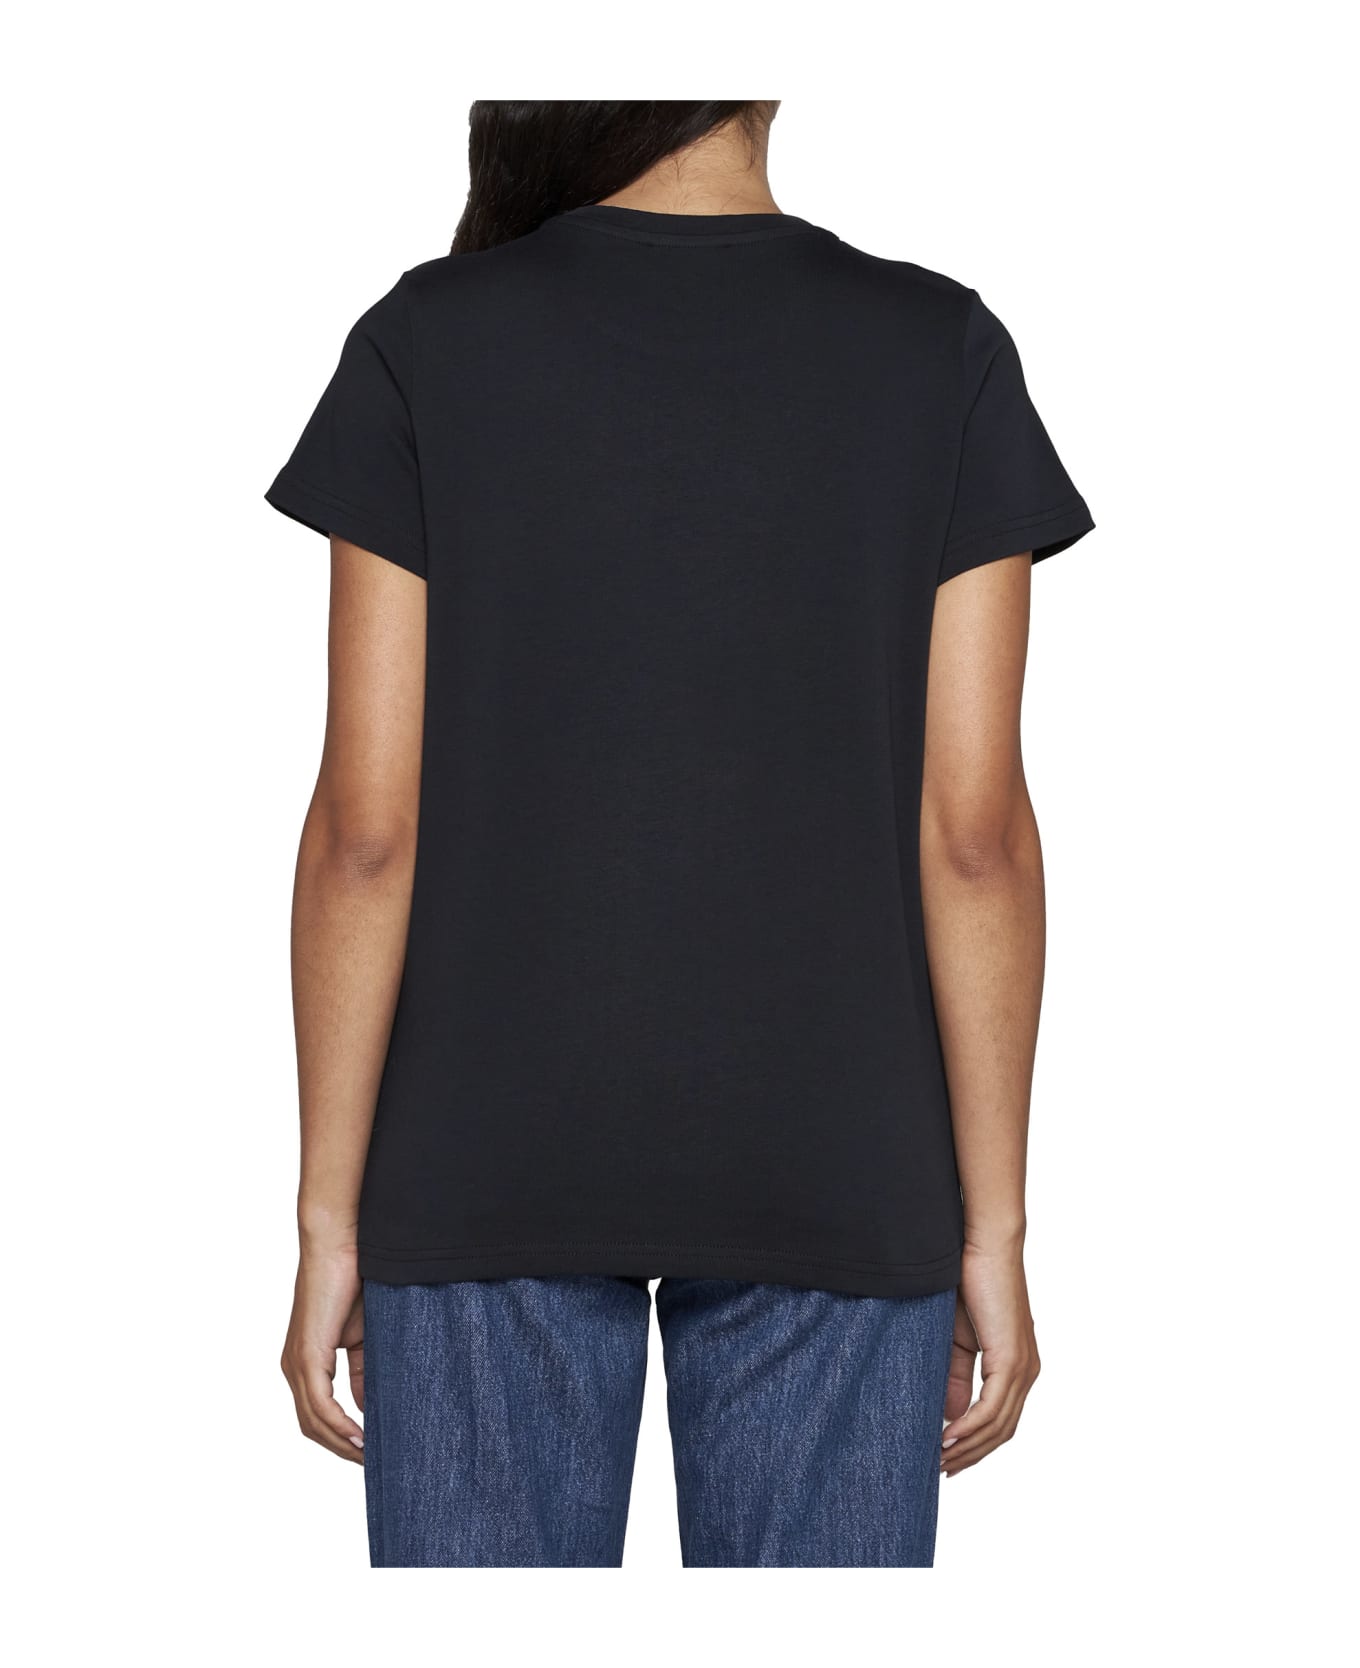 A.P.C. Denise T-shirt - Black